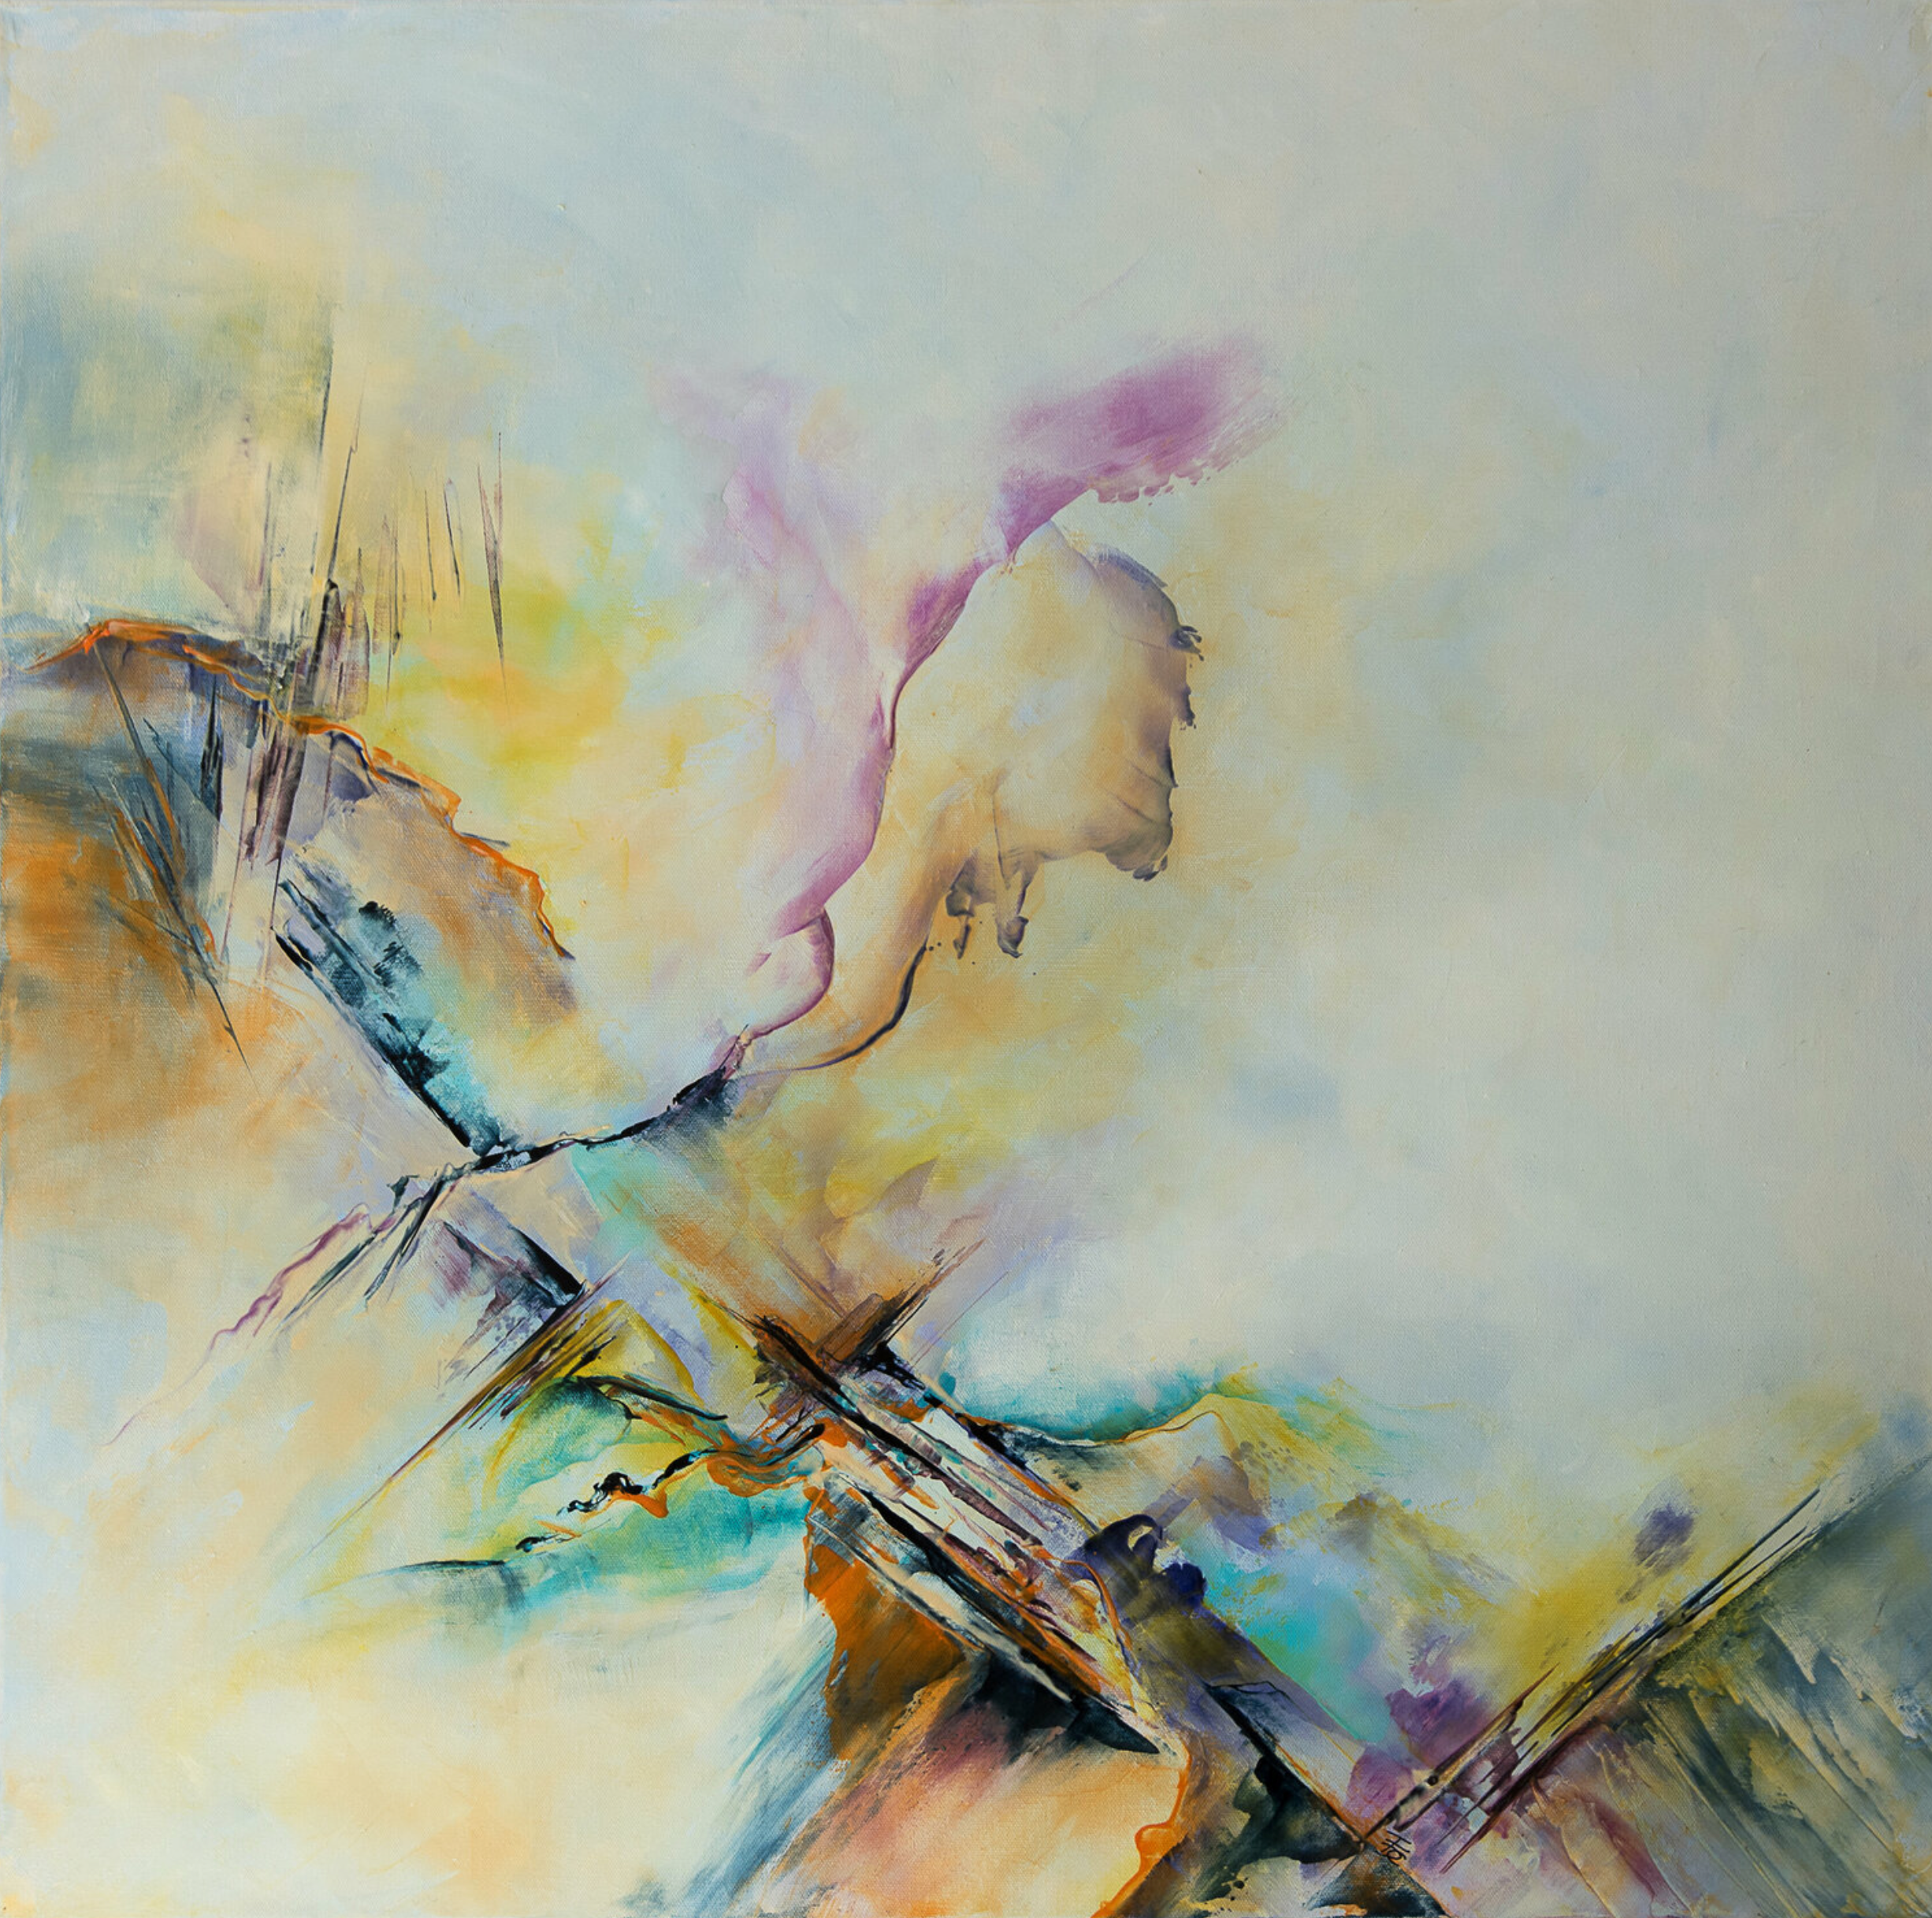 弗朗索瓦丝-杜古德-卡普特的 "天狼星 "抽象画展示了色彩的漩涡，让人联想到大自然和时间的流逝，有时会被尖锐的边缘迅速显现出来，而其他时刻，在柔和、愉快和圆润的色彩中放松和宁静。